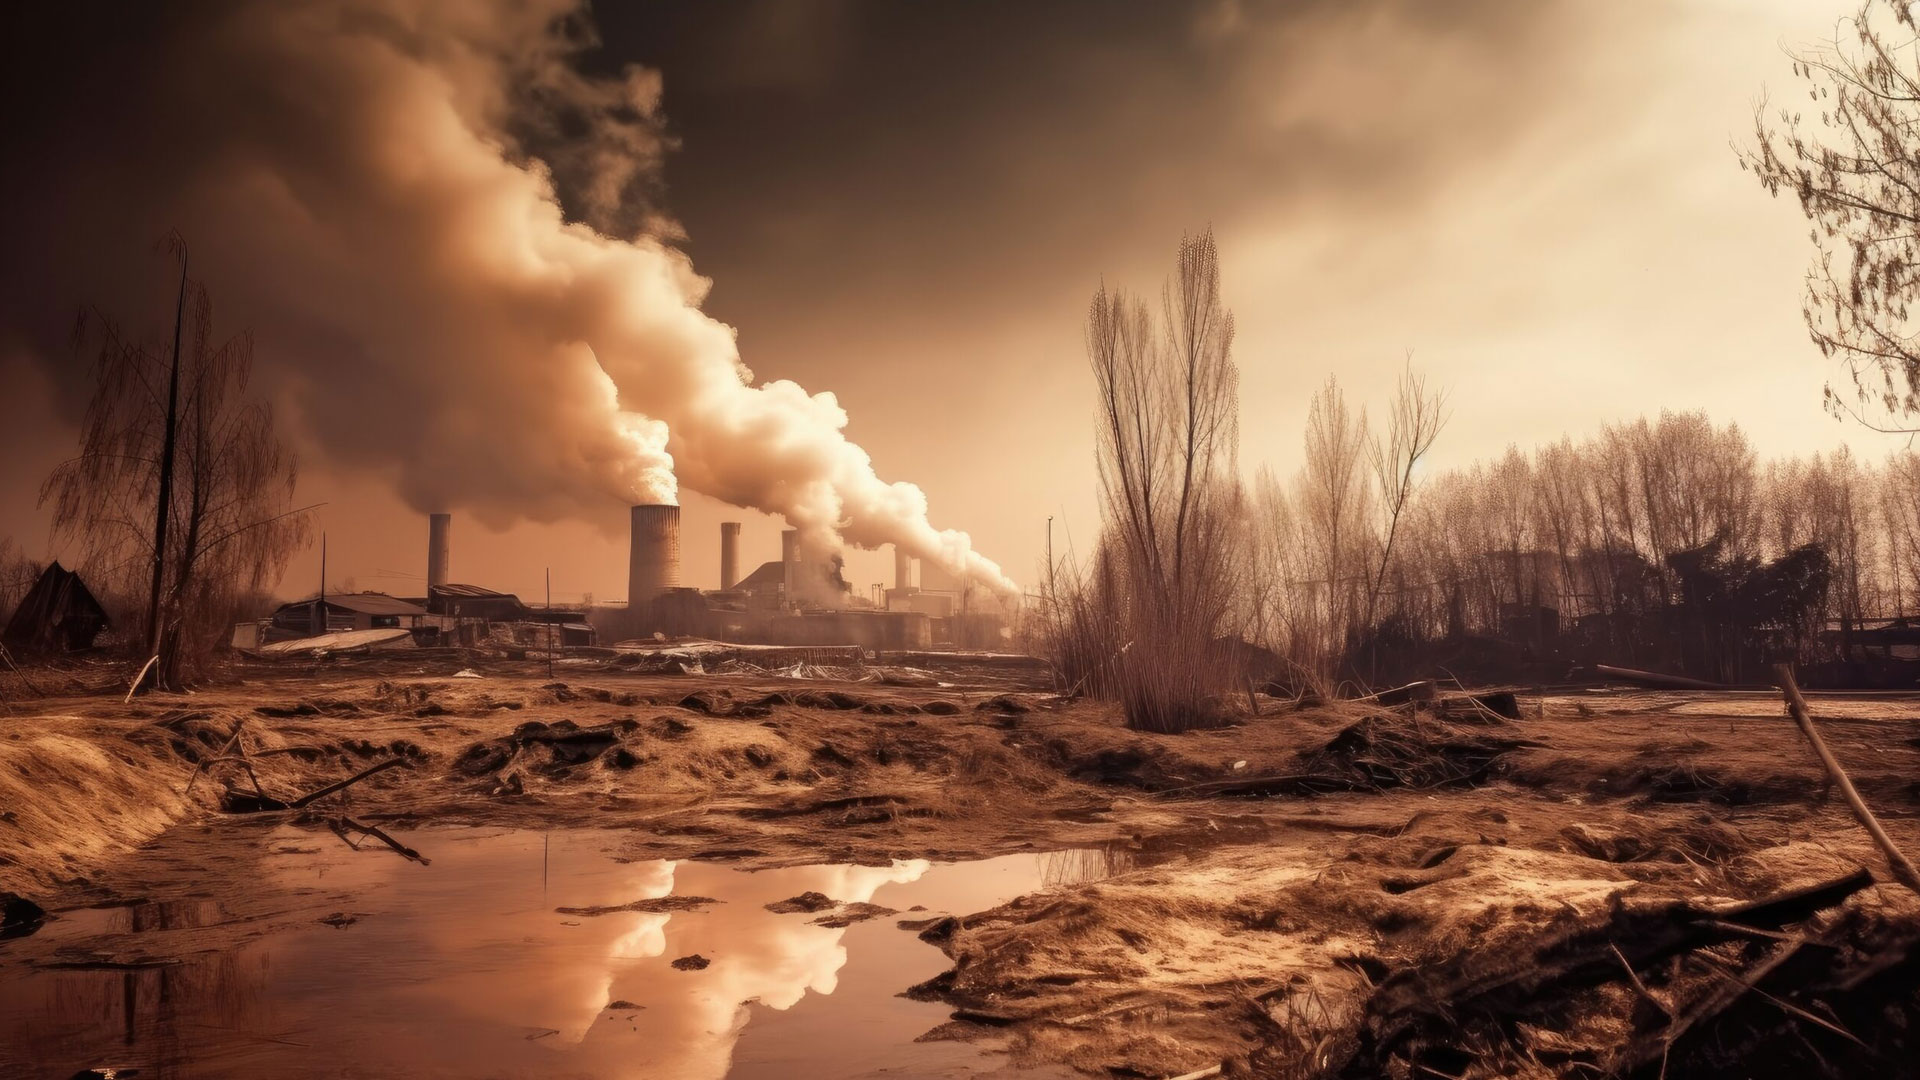 Cenário apocalíptico com indústria emitindo grande quantidade de gases na atmosfera. A vegetação ao redor está com aspecto negativo.